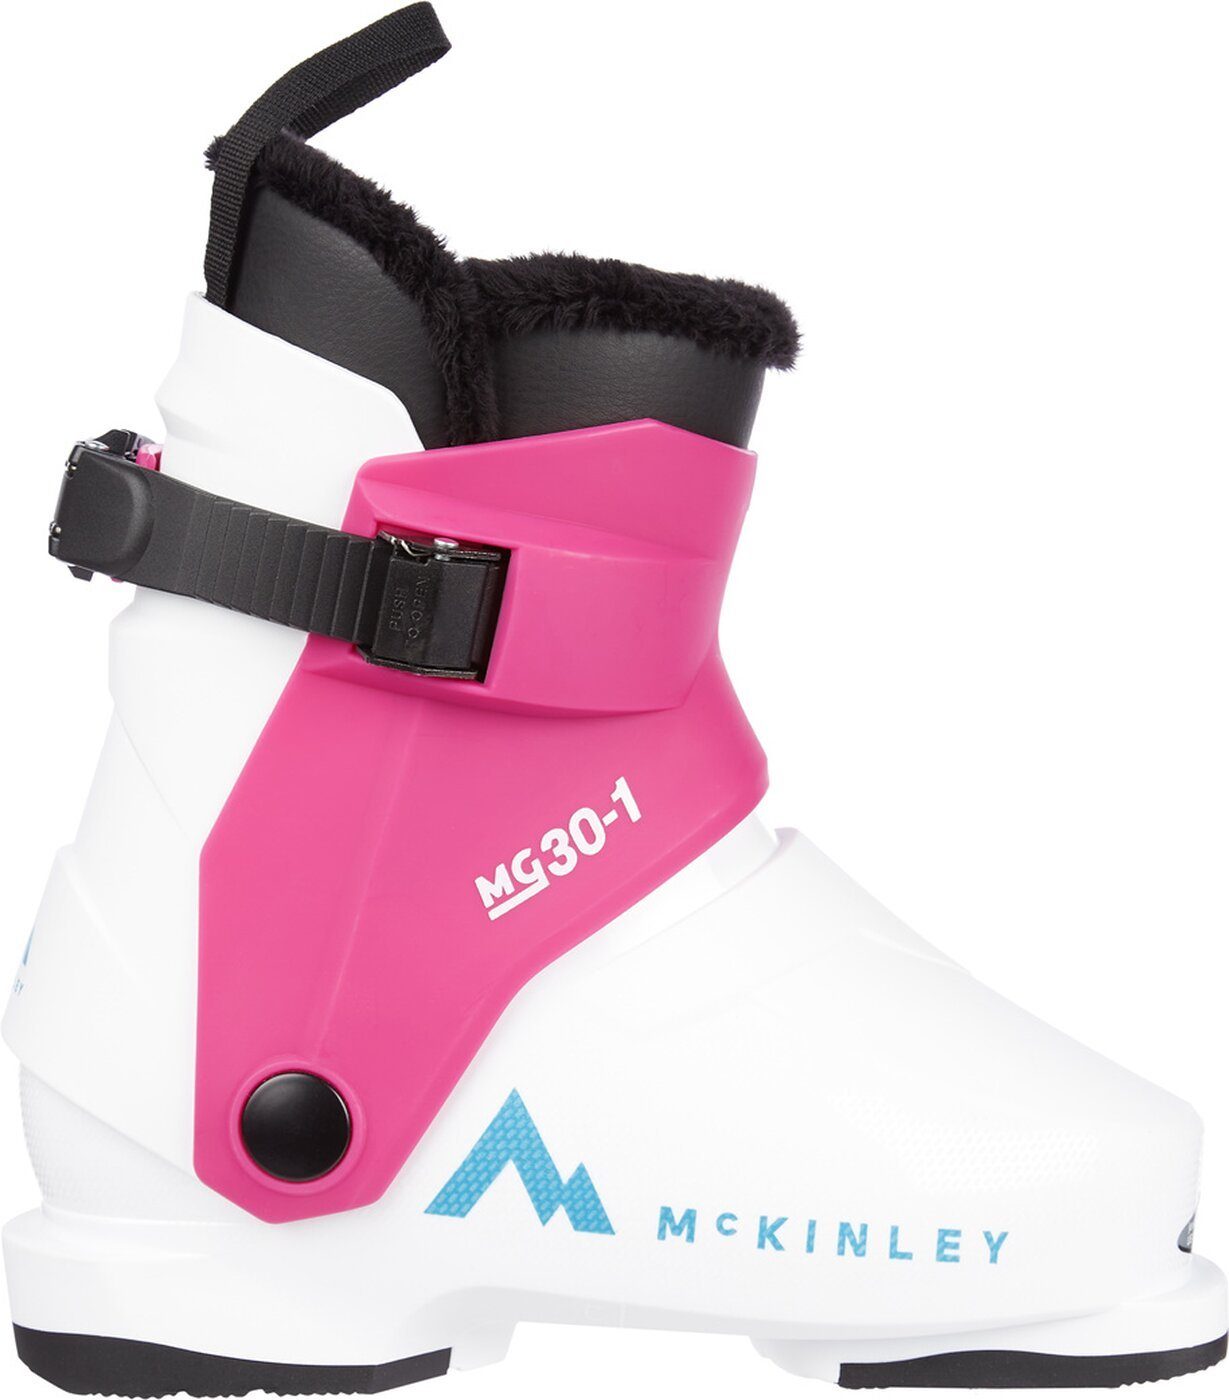 McKINLEY M?.-Skistiefel MG30-1 Skischuh